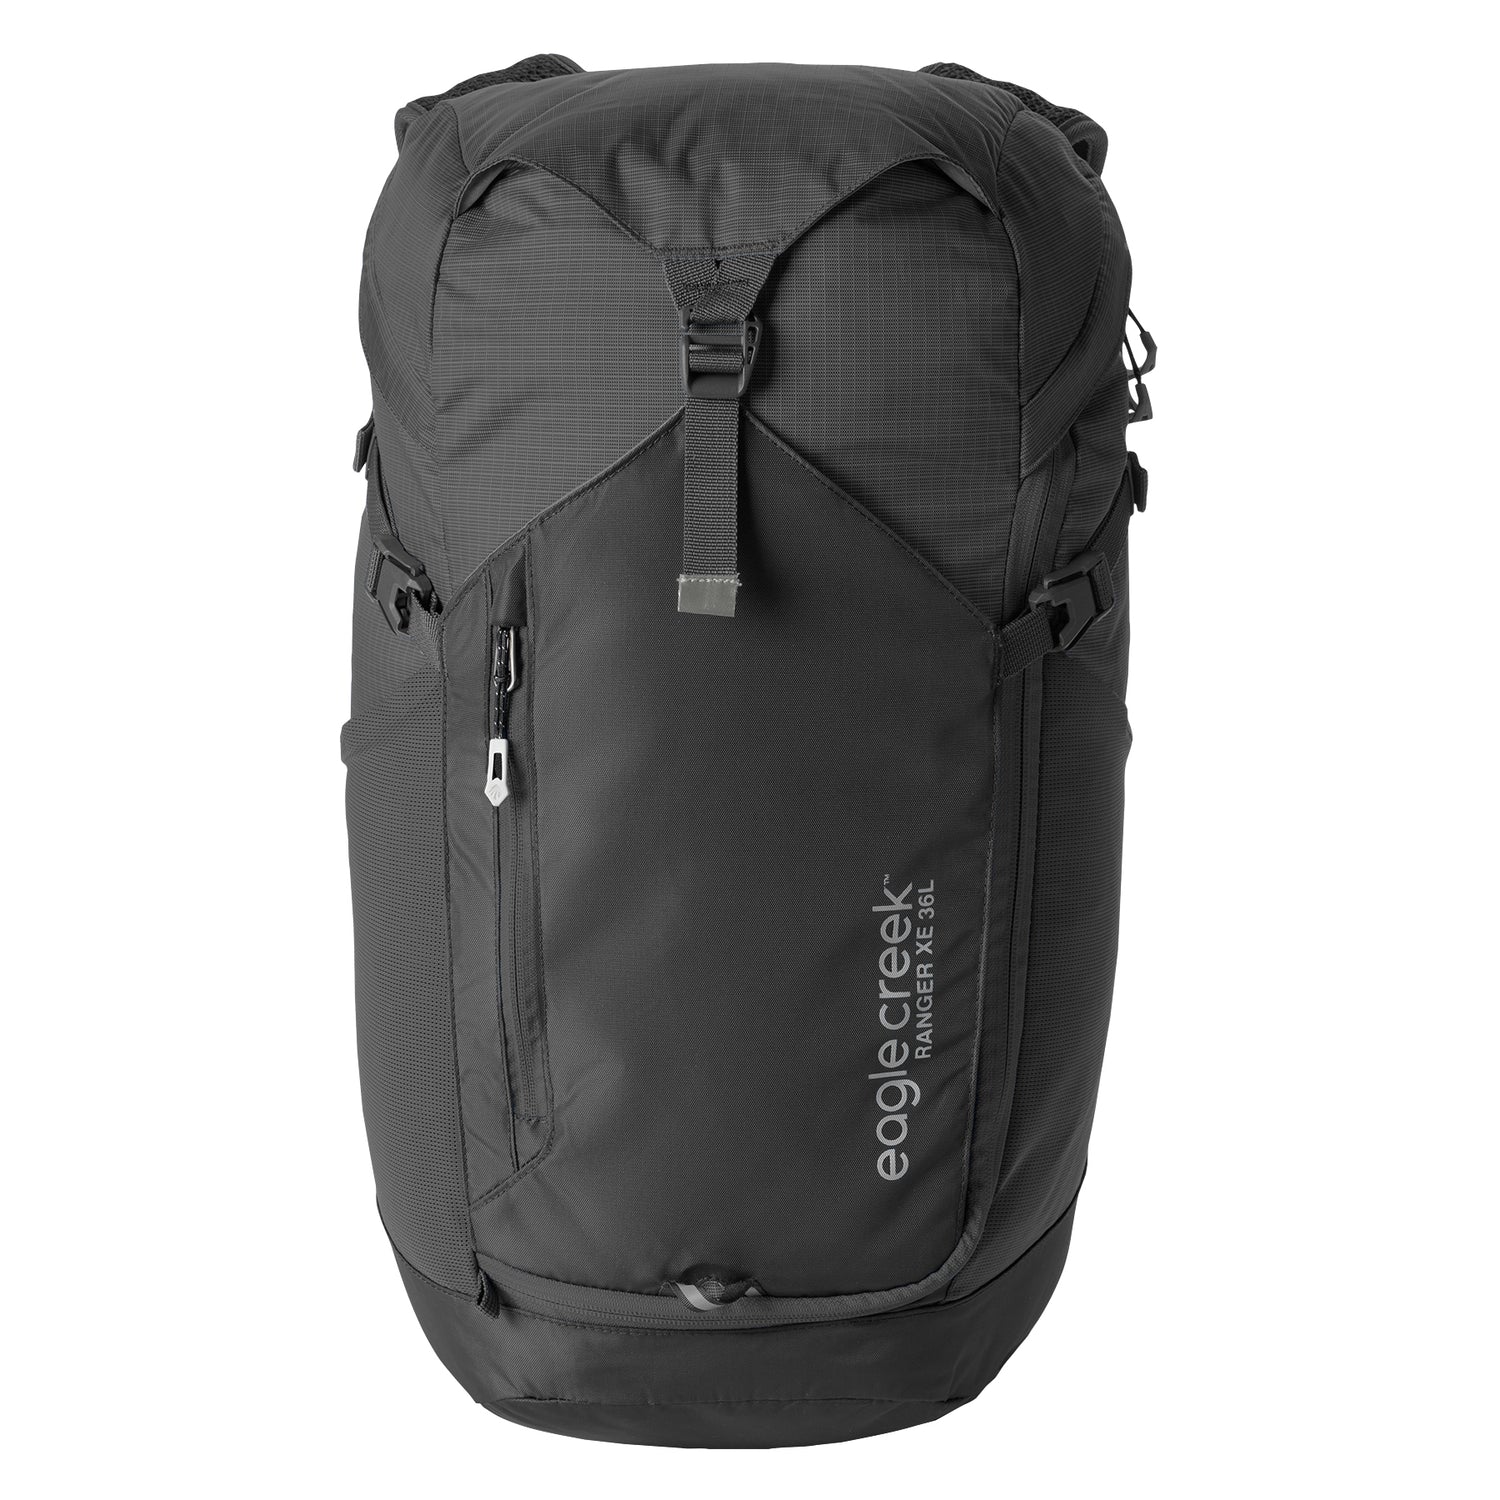 Ranger XE Backpack 36L - BLACK/RIVER ROCK